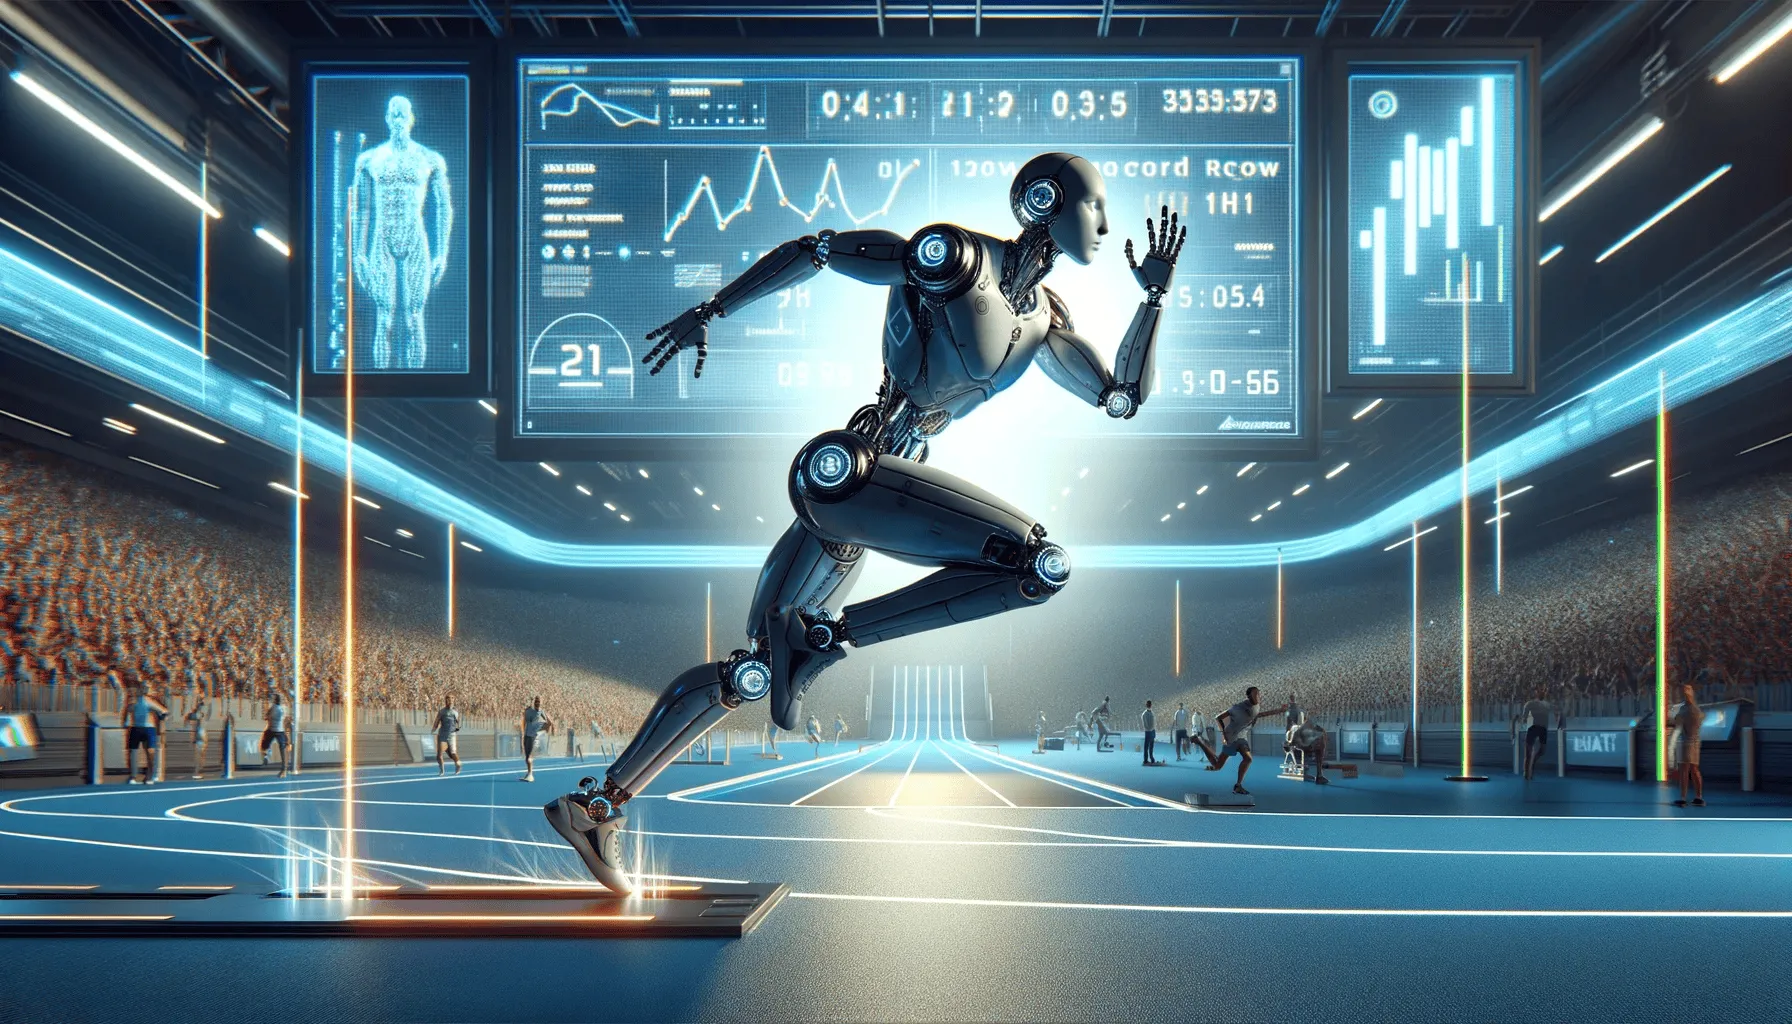 Intel Paris Olimpiyatları'nda yapay zekâ şovuna hazırlanıyor!